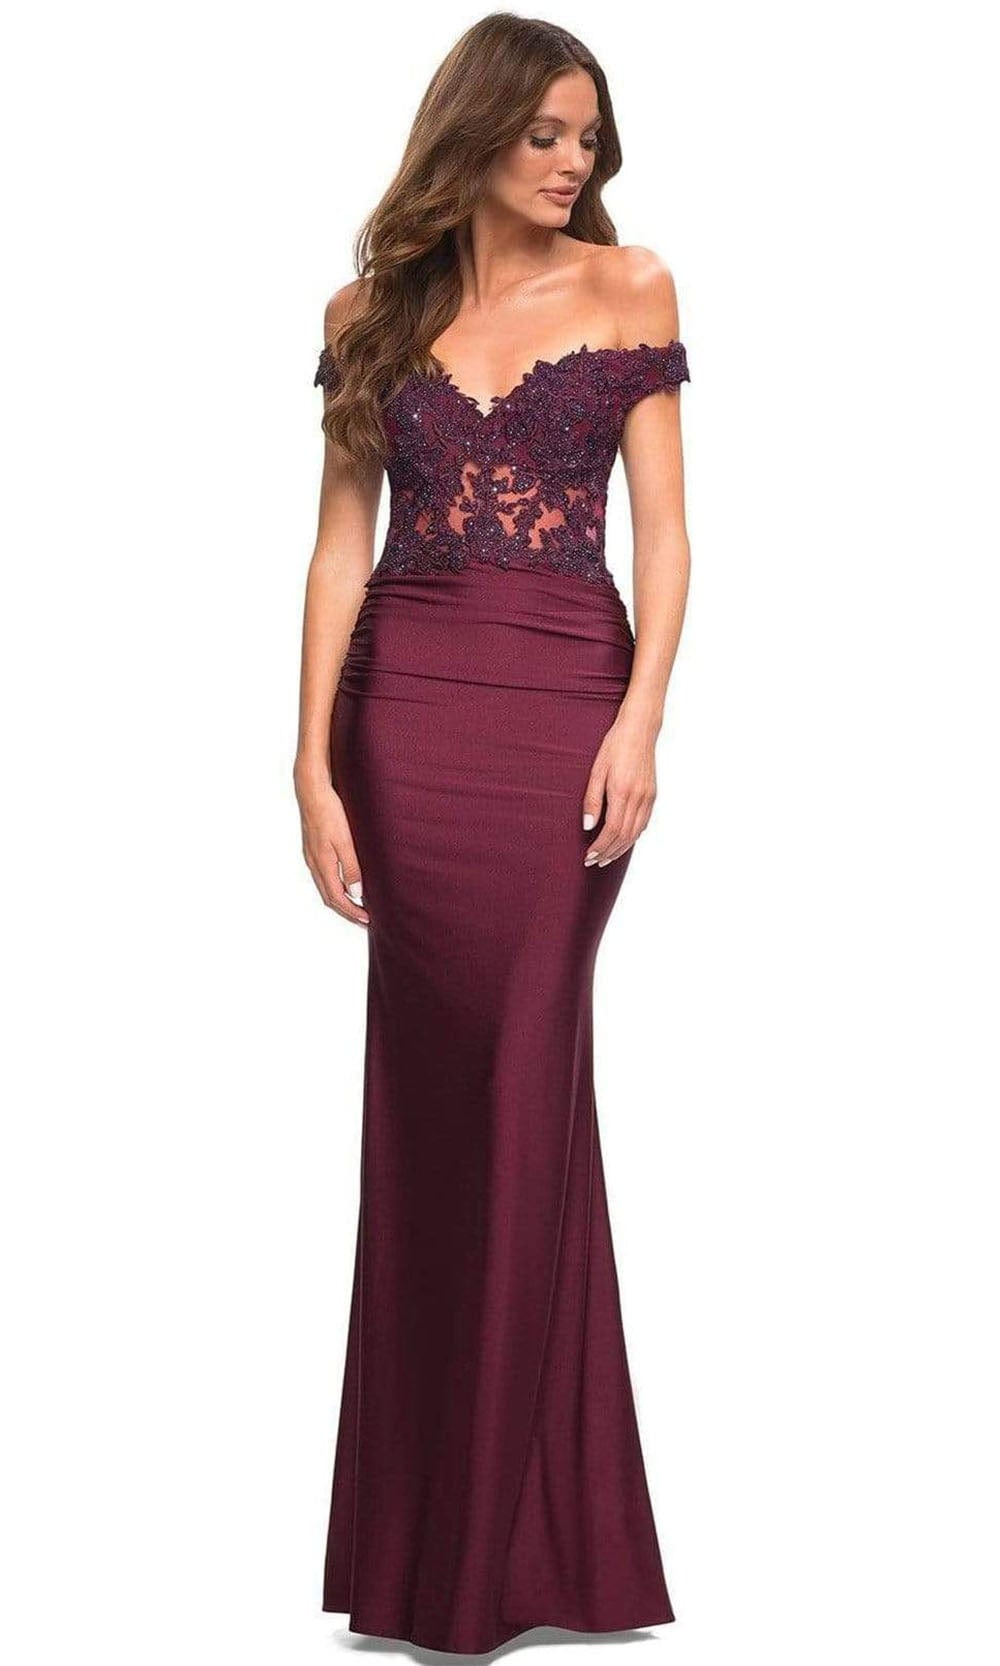 Image of La Femme - 30741 Illusion Lace Top Long Dress